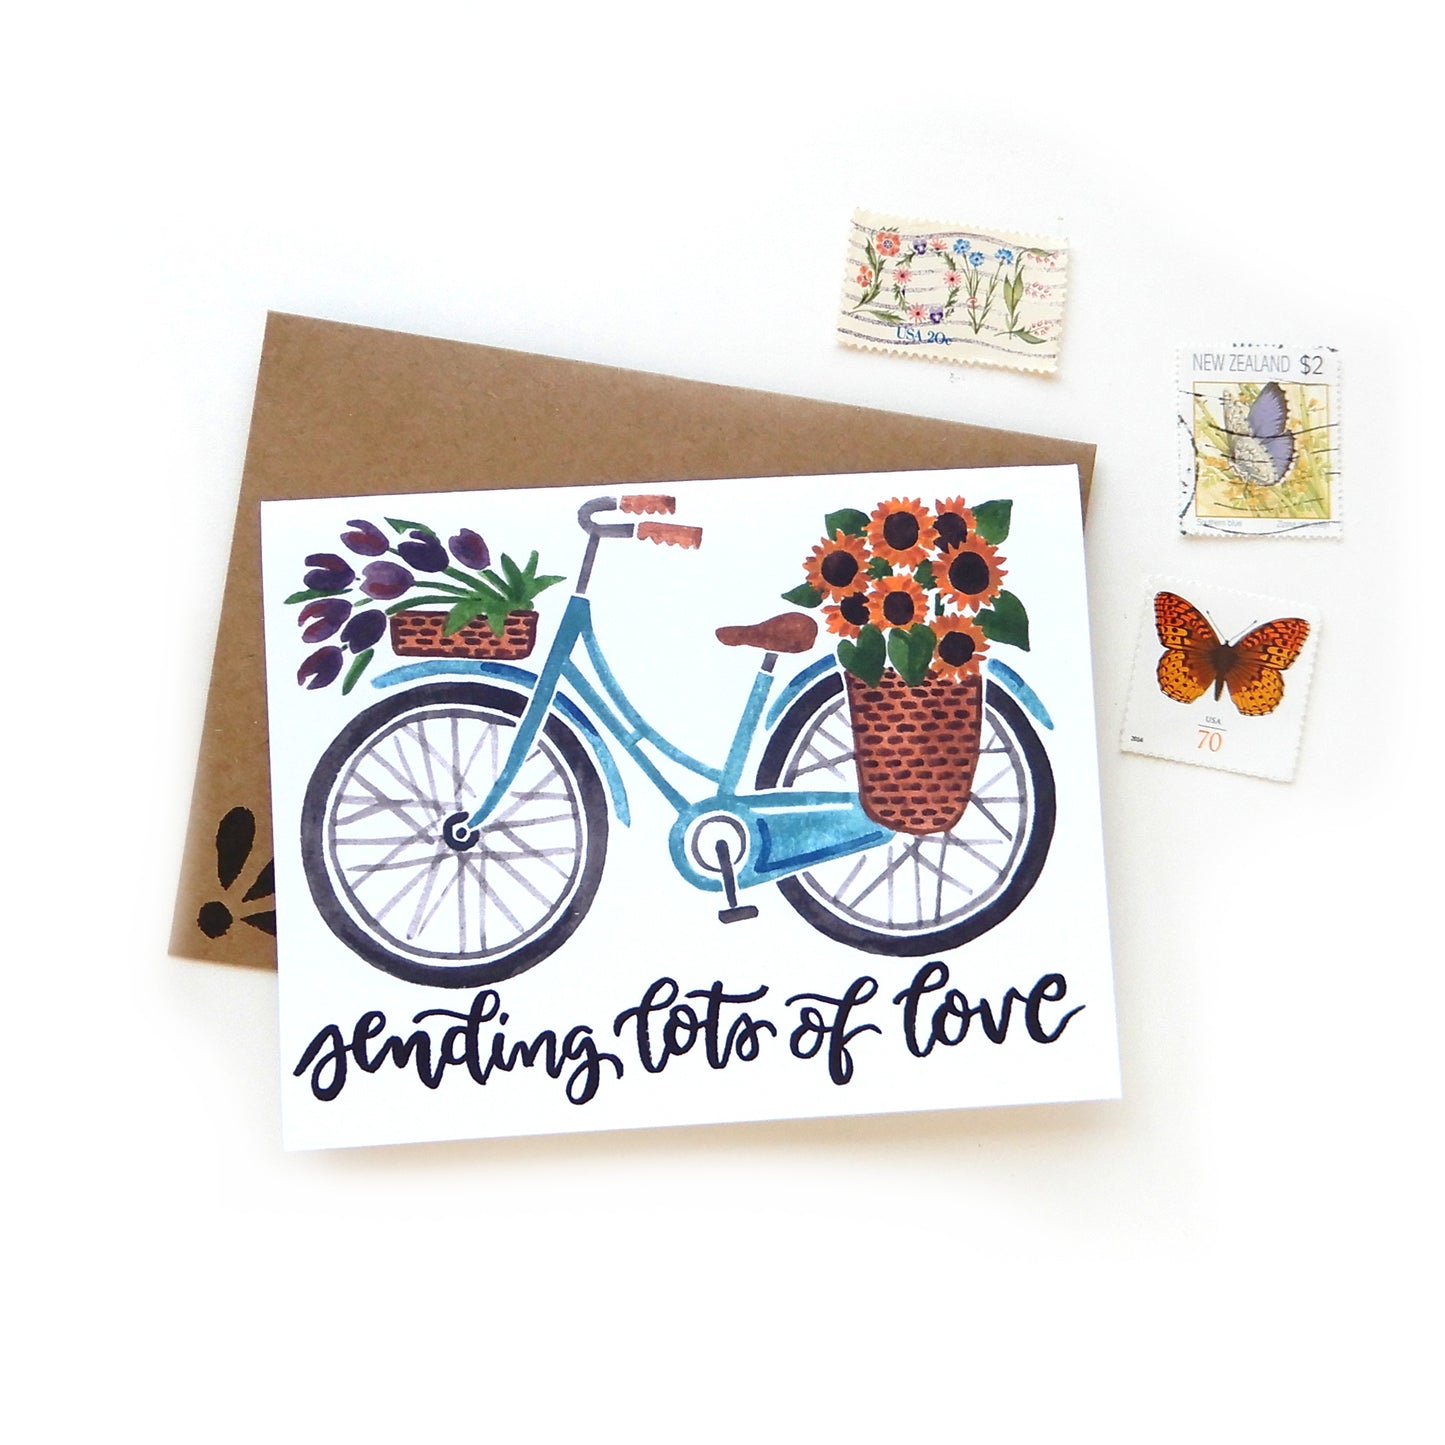 Sending Love Bike Card